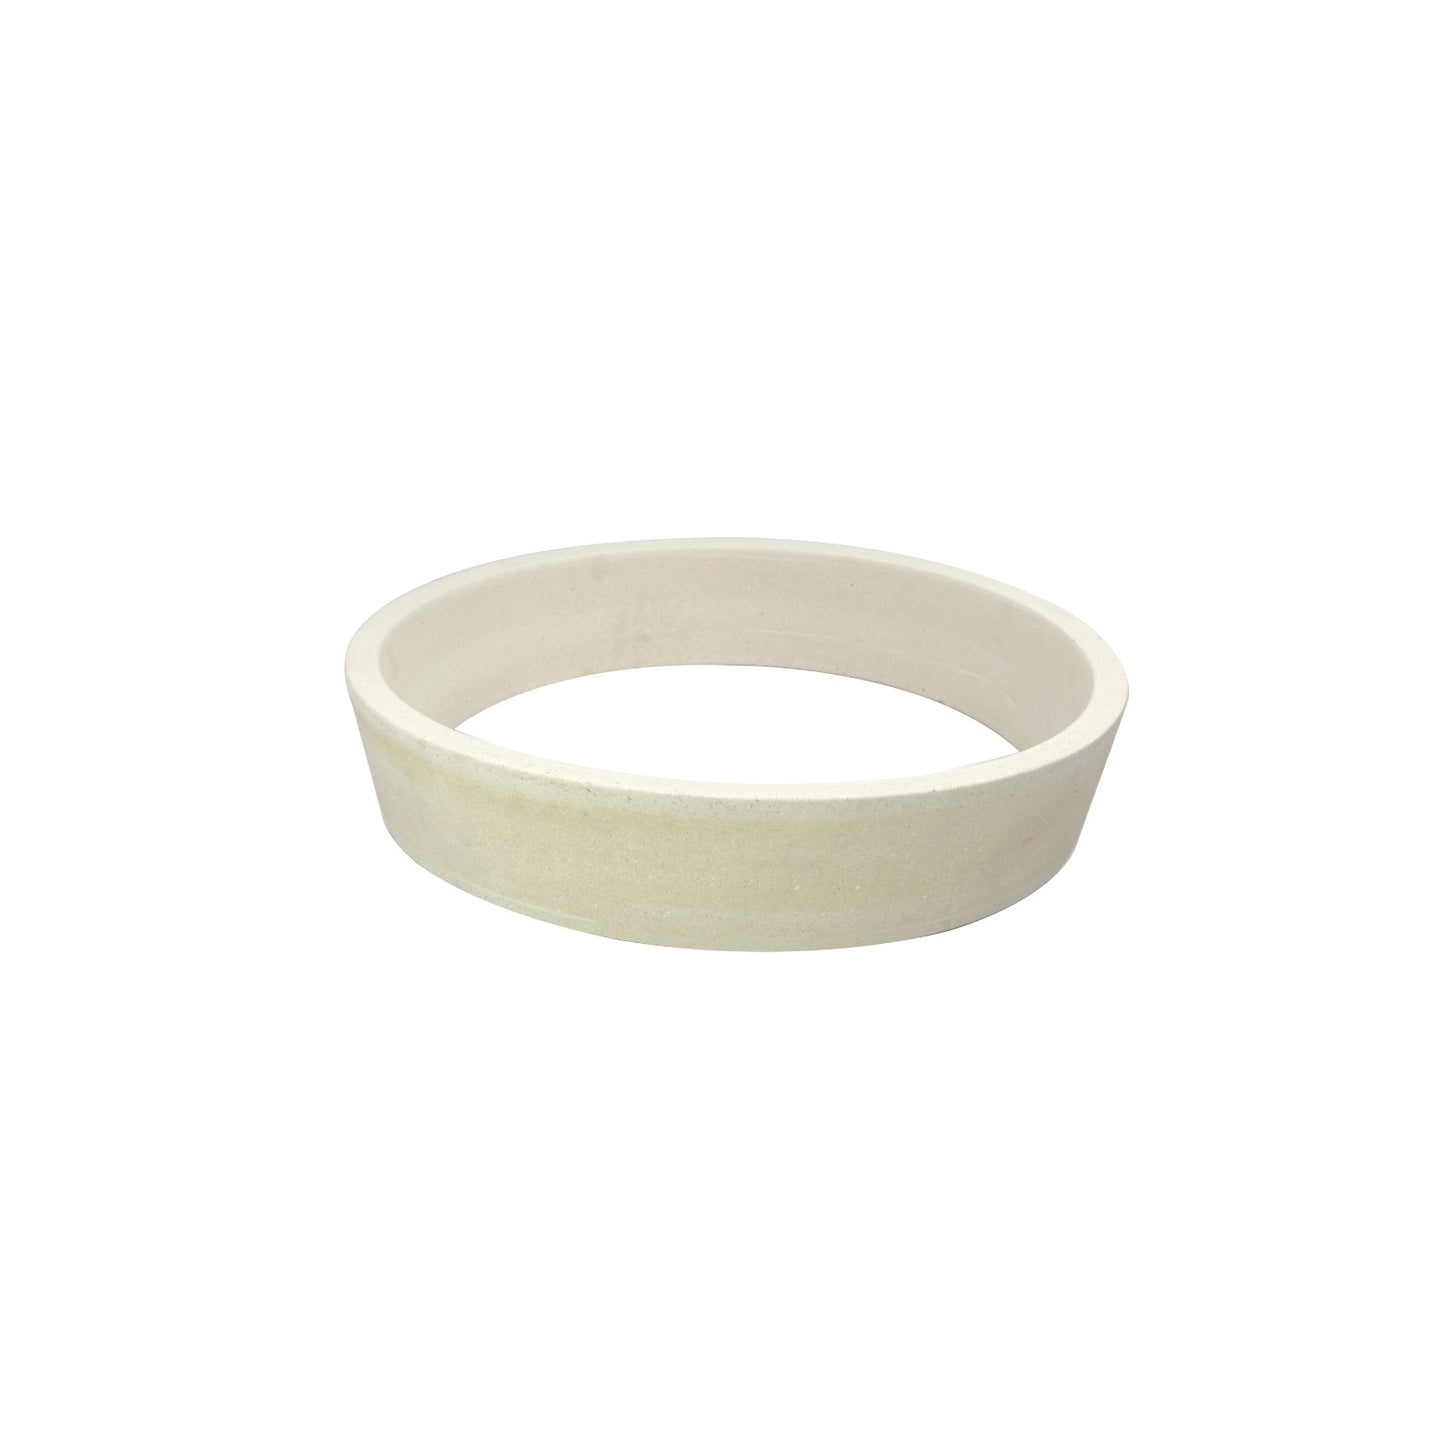 Vuurring/Keramische Ring- Large-1 46 cm